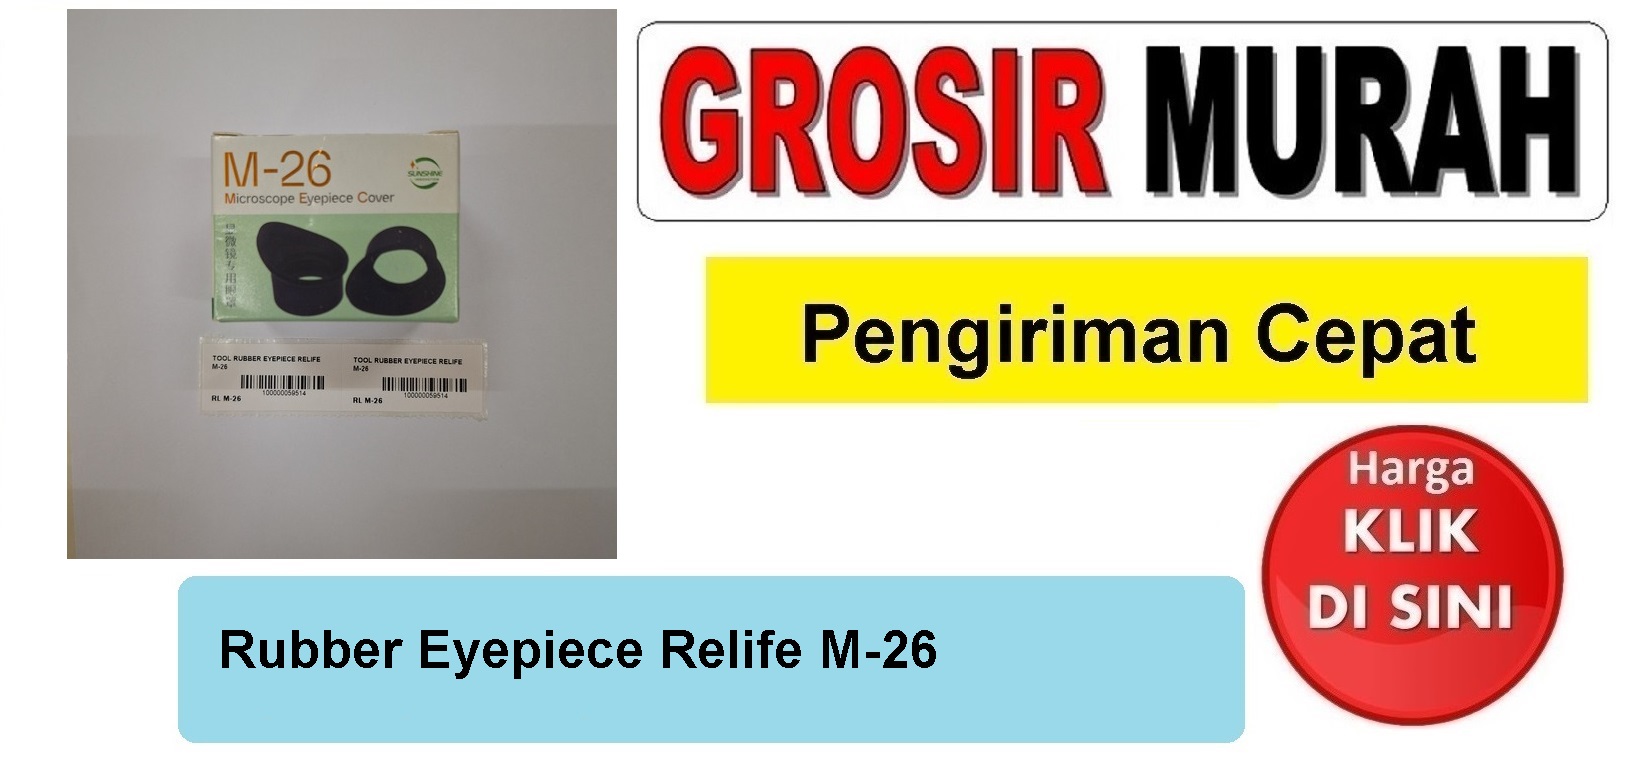 Rubber Eyepiece Relife M-26 Perlengkapan Service Toolkit Alat Serpis teknisi